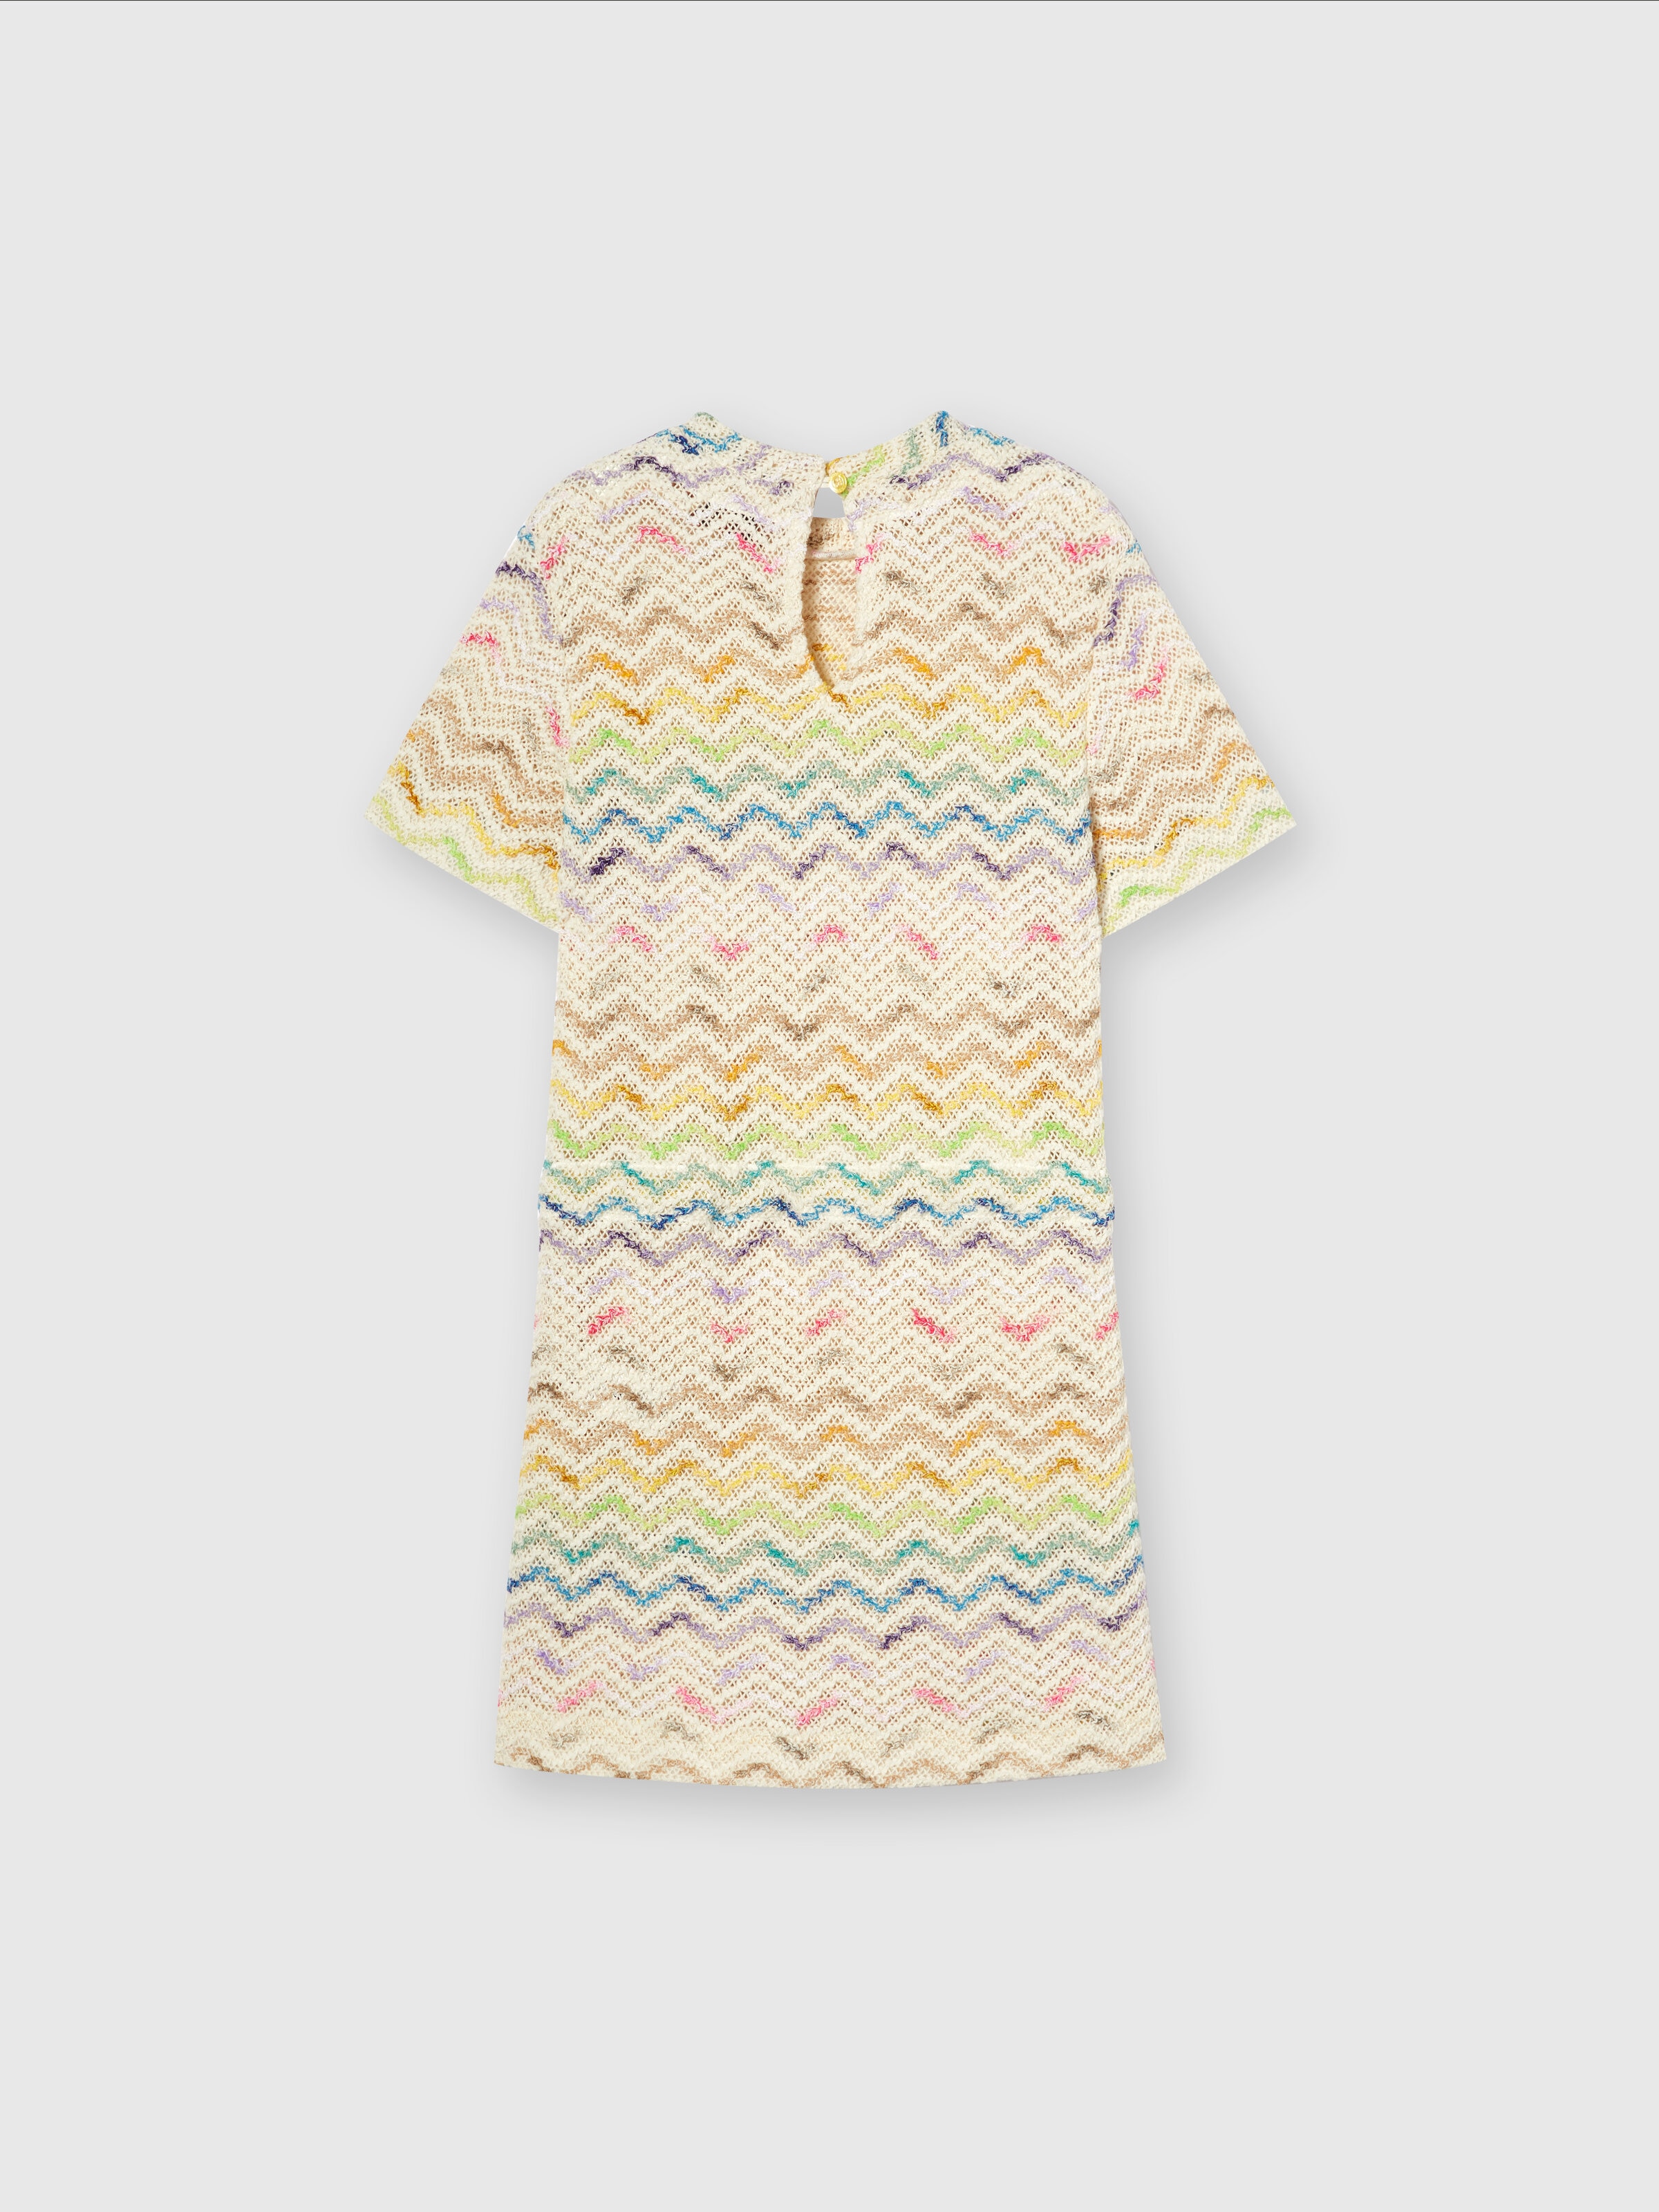 Cotton blend chevron knit dress, Multicoloured  - 1